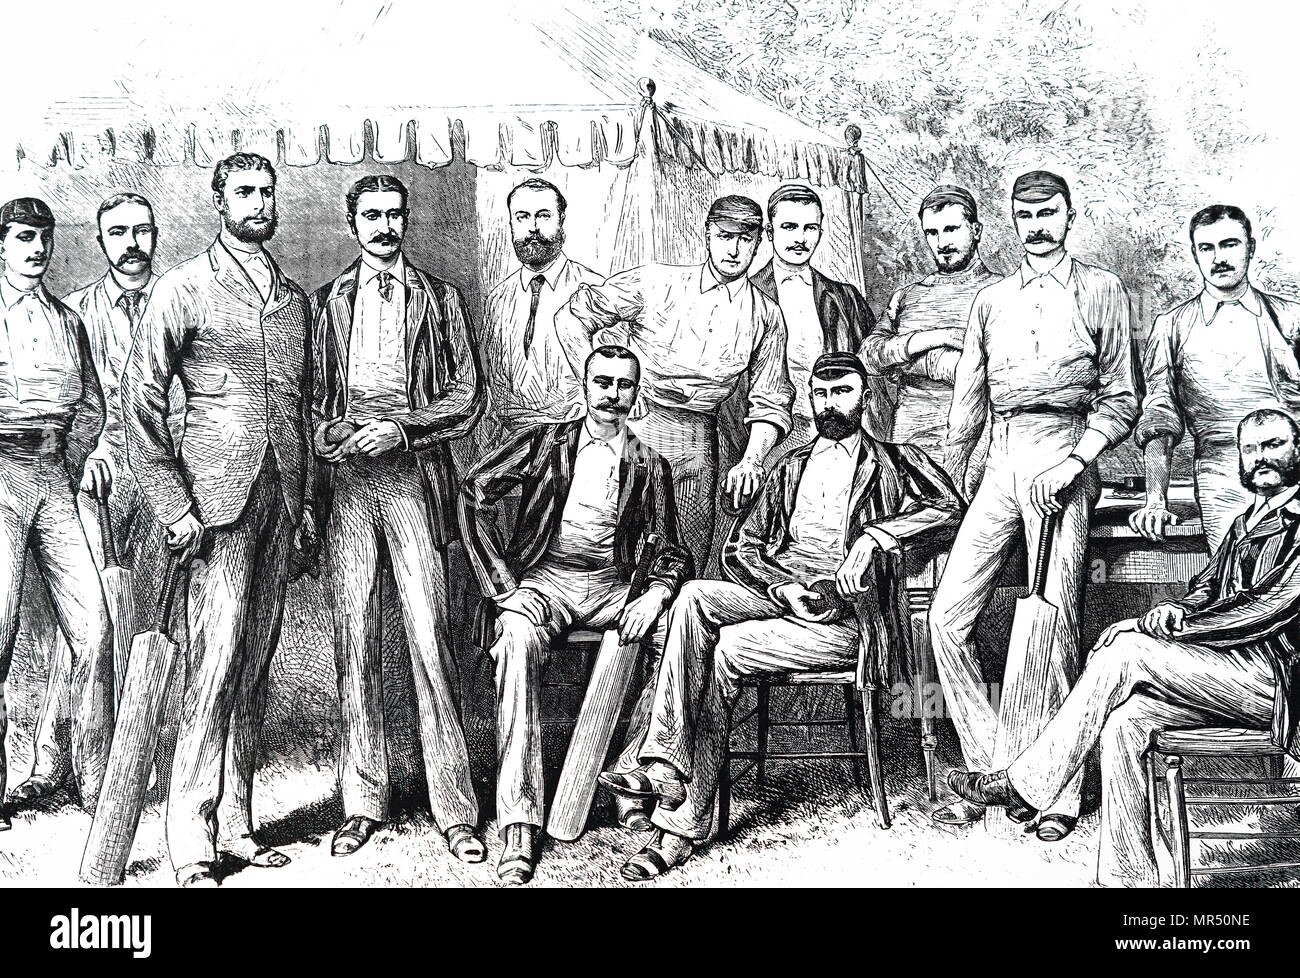 Illustration montrant la première équipe de cricket de 1882. De gauche à droite : S. P. Jones ; A. C. Bannerman, G. J. Bonnor, F. R. Spofforth, J. McCarthy, Blackhara W. L. Murdoch, Eugene G. Palmer, G. Giffe, H. F. Boyle, T. W. Garrett, H. H. Massie, Percy S. MacDonnell, T. Horan. En date du 19e siècle Banque D'Images